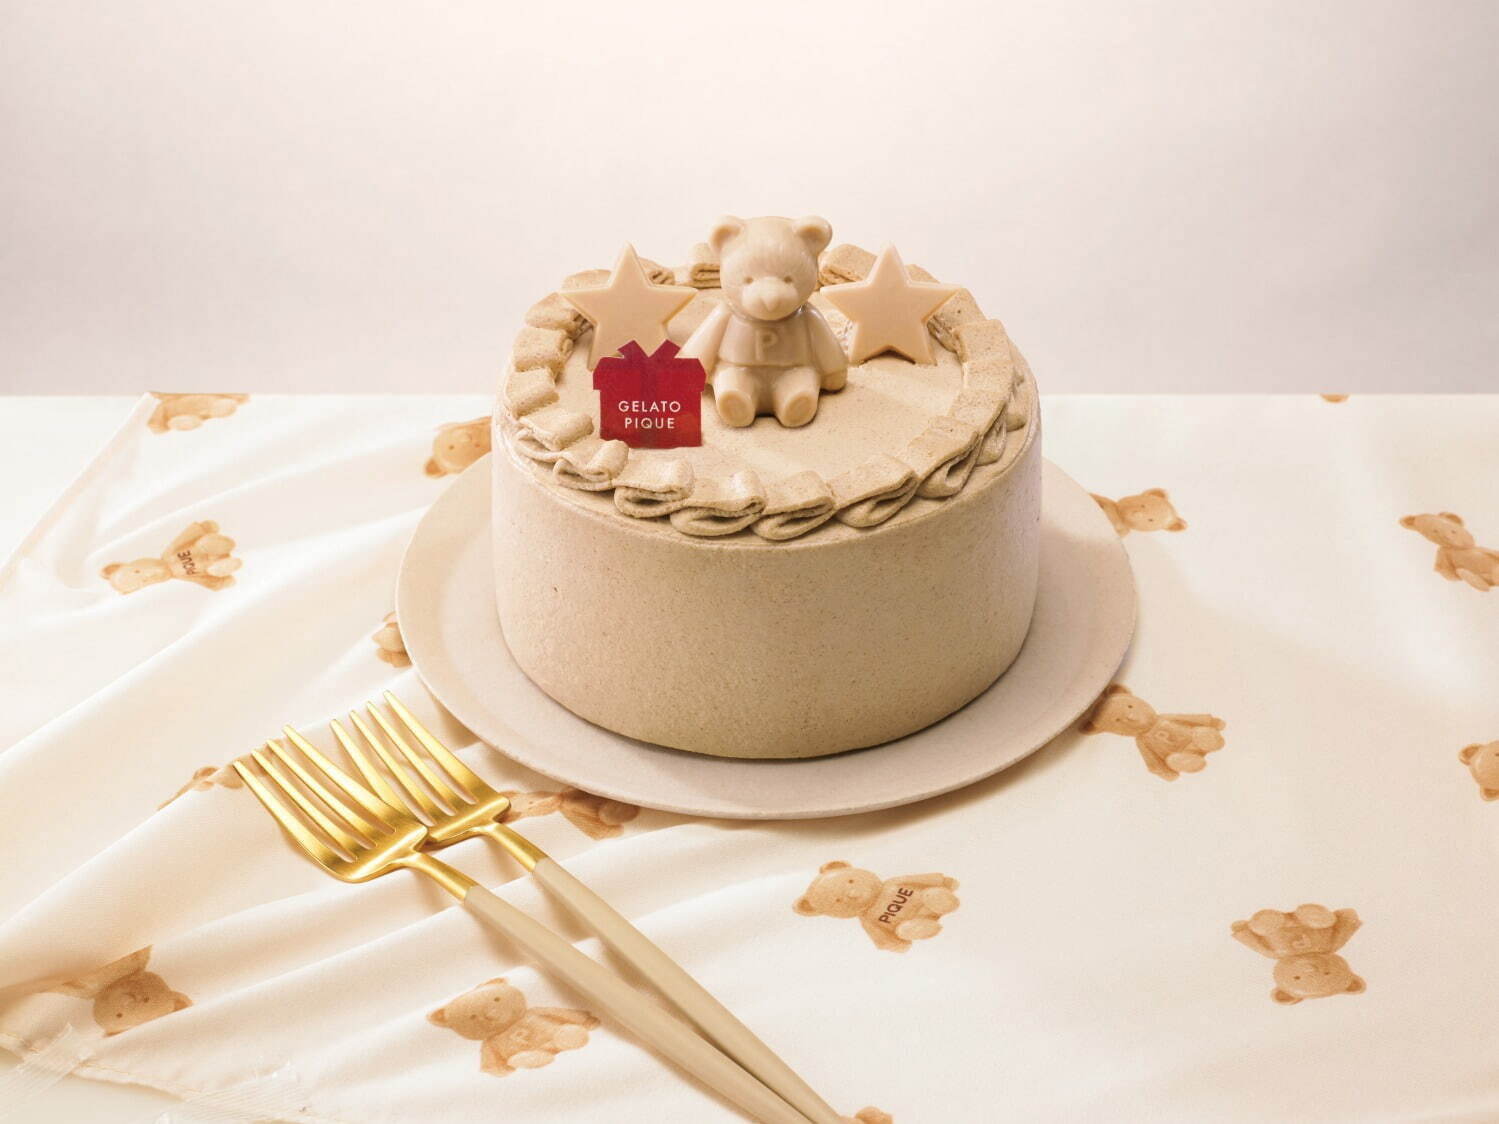 gelato piqueブラウンベアの焦がしバターキャラメルケーキ 4,309円